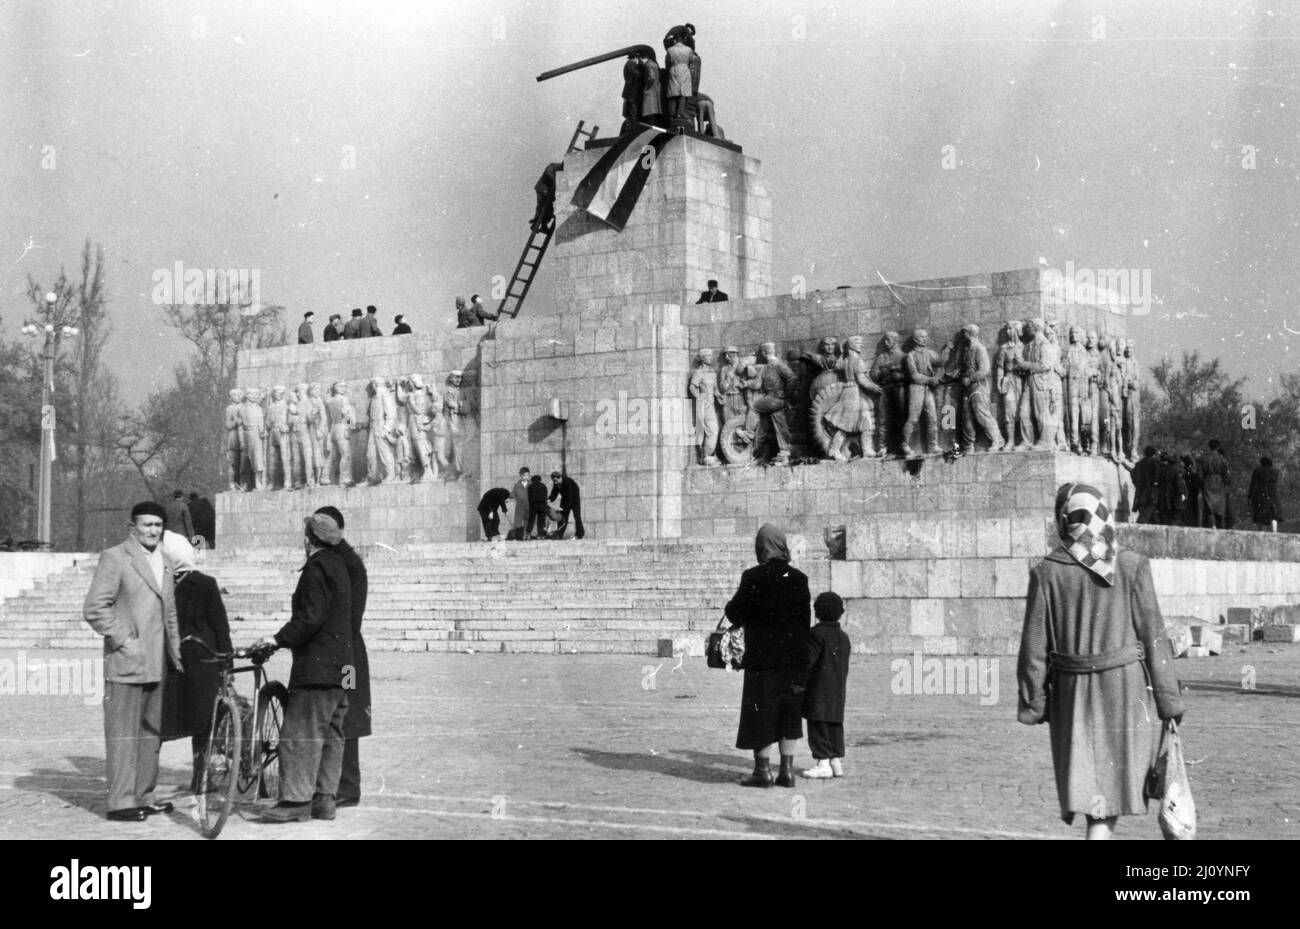 A Budapest durante la Rivoluzione Ungherese del 1956, gli anti-comunisti e i nazionalisti collocano una bandiera nazionale ungherese sulla cima di una statua demolita di Josef Stalin. Foto Stock